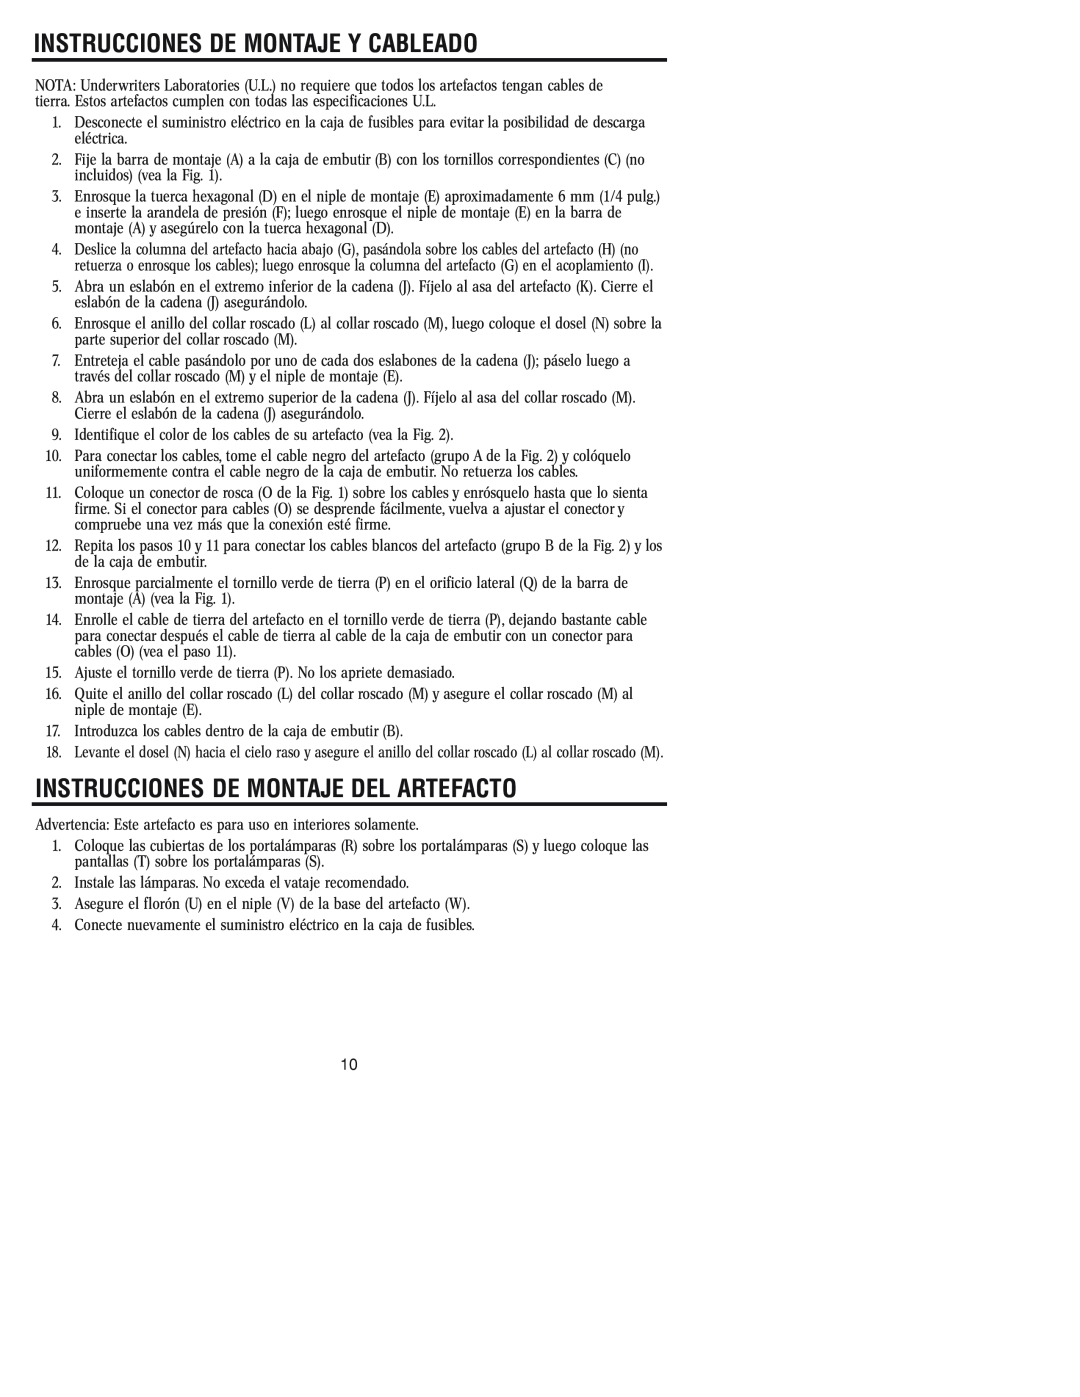 Westinghouse W-107 owner manual Instrucciones De Montaje Y Cableado, Instrucciones De Montaje Del Artefacto 